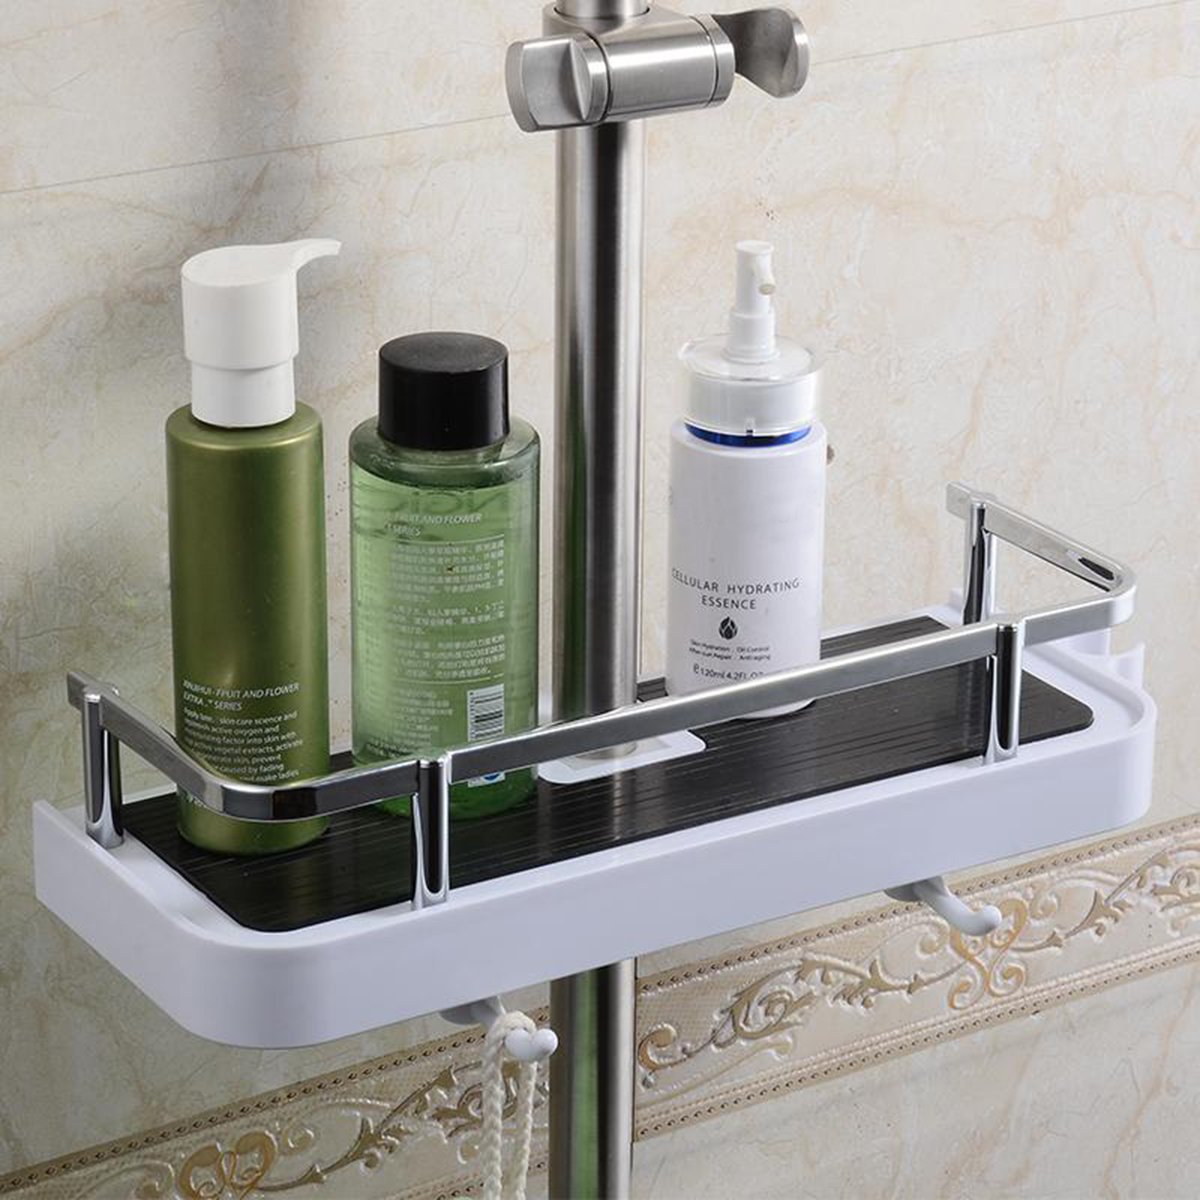 Bathroom-Pole-Shelf-Shower-Storage-Caddy-Rack-Organiser-Tray-Holder-Drain-Shelf-1165844-7